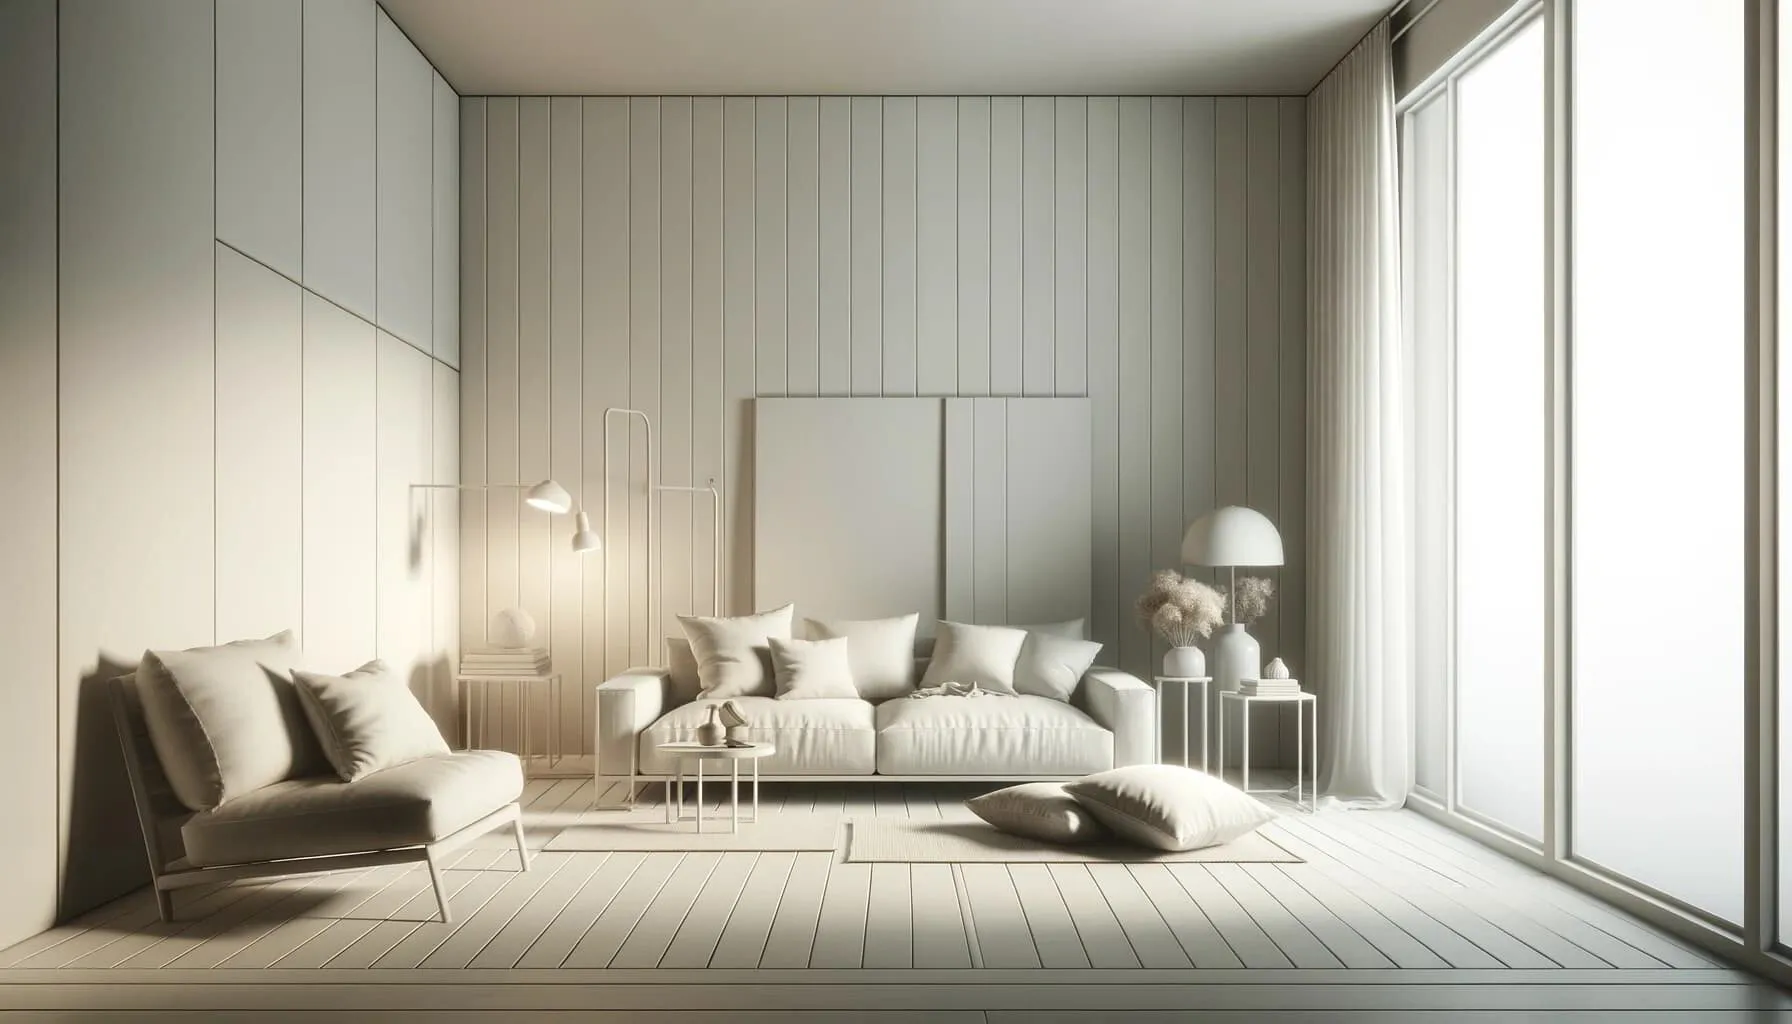 A minimalist interior design scene